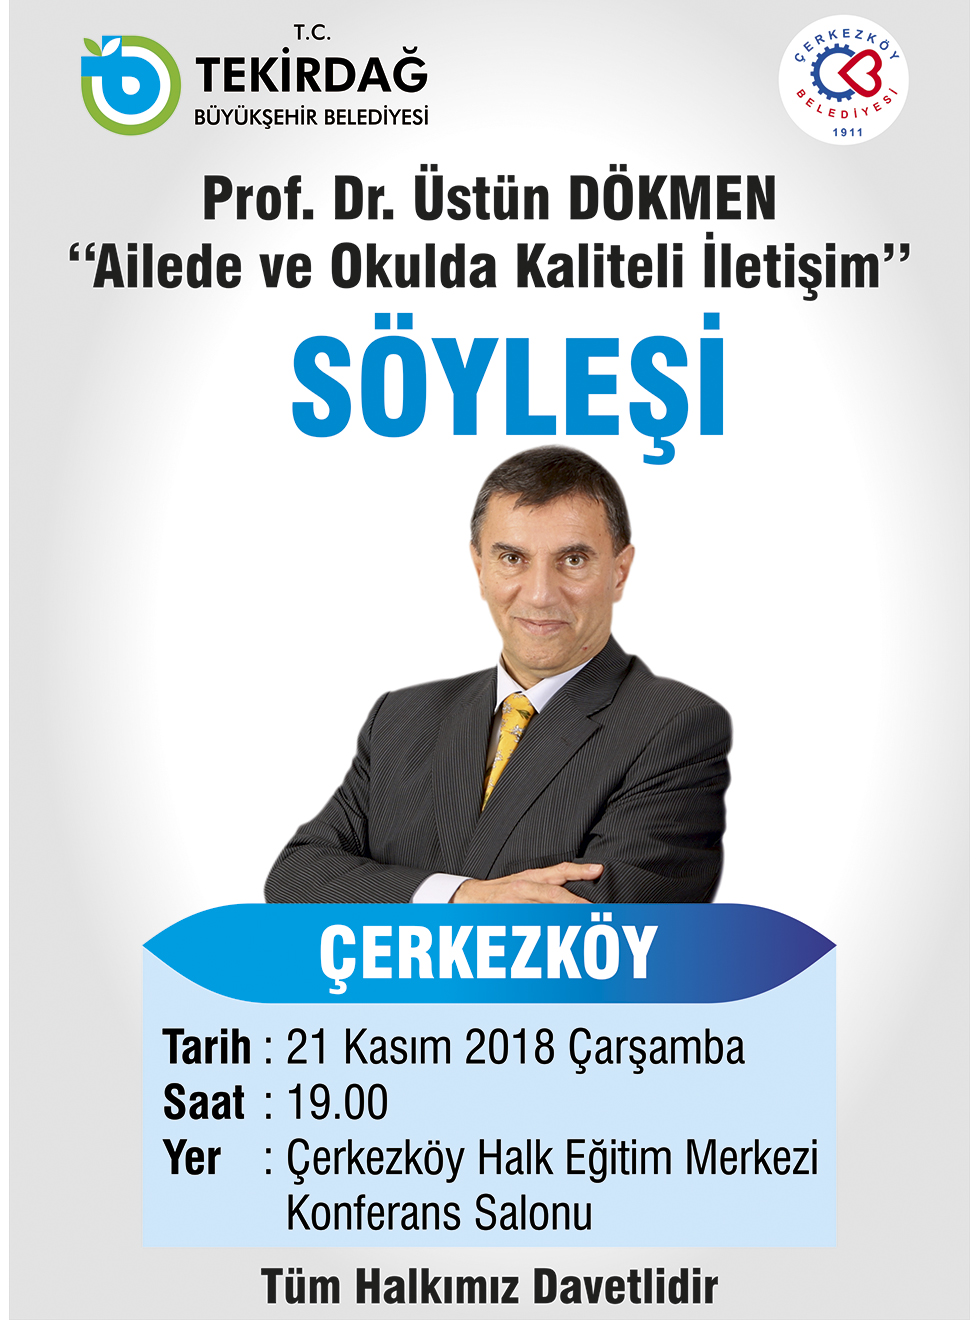 Prof. Dr. Üstün Dökmen ile Söyleşi - Çerkezköy